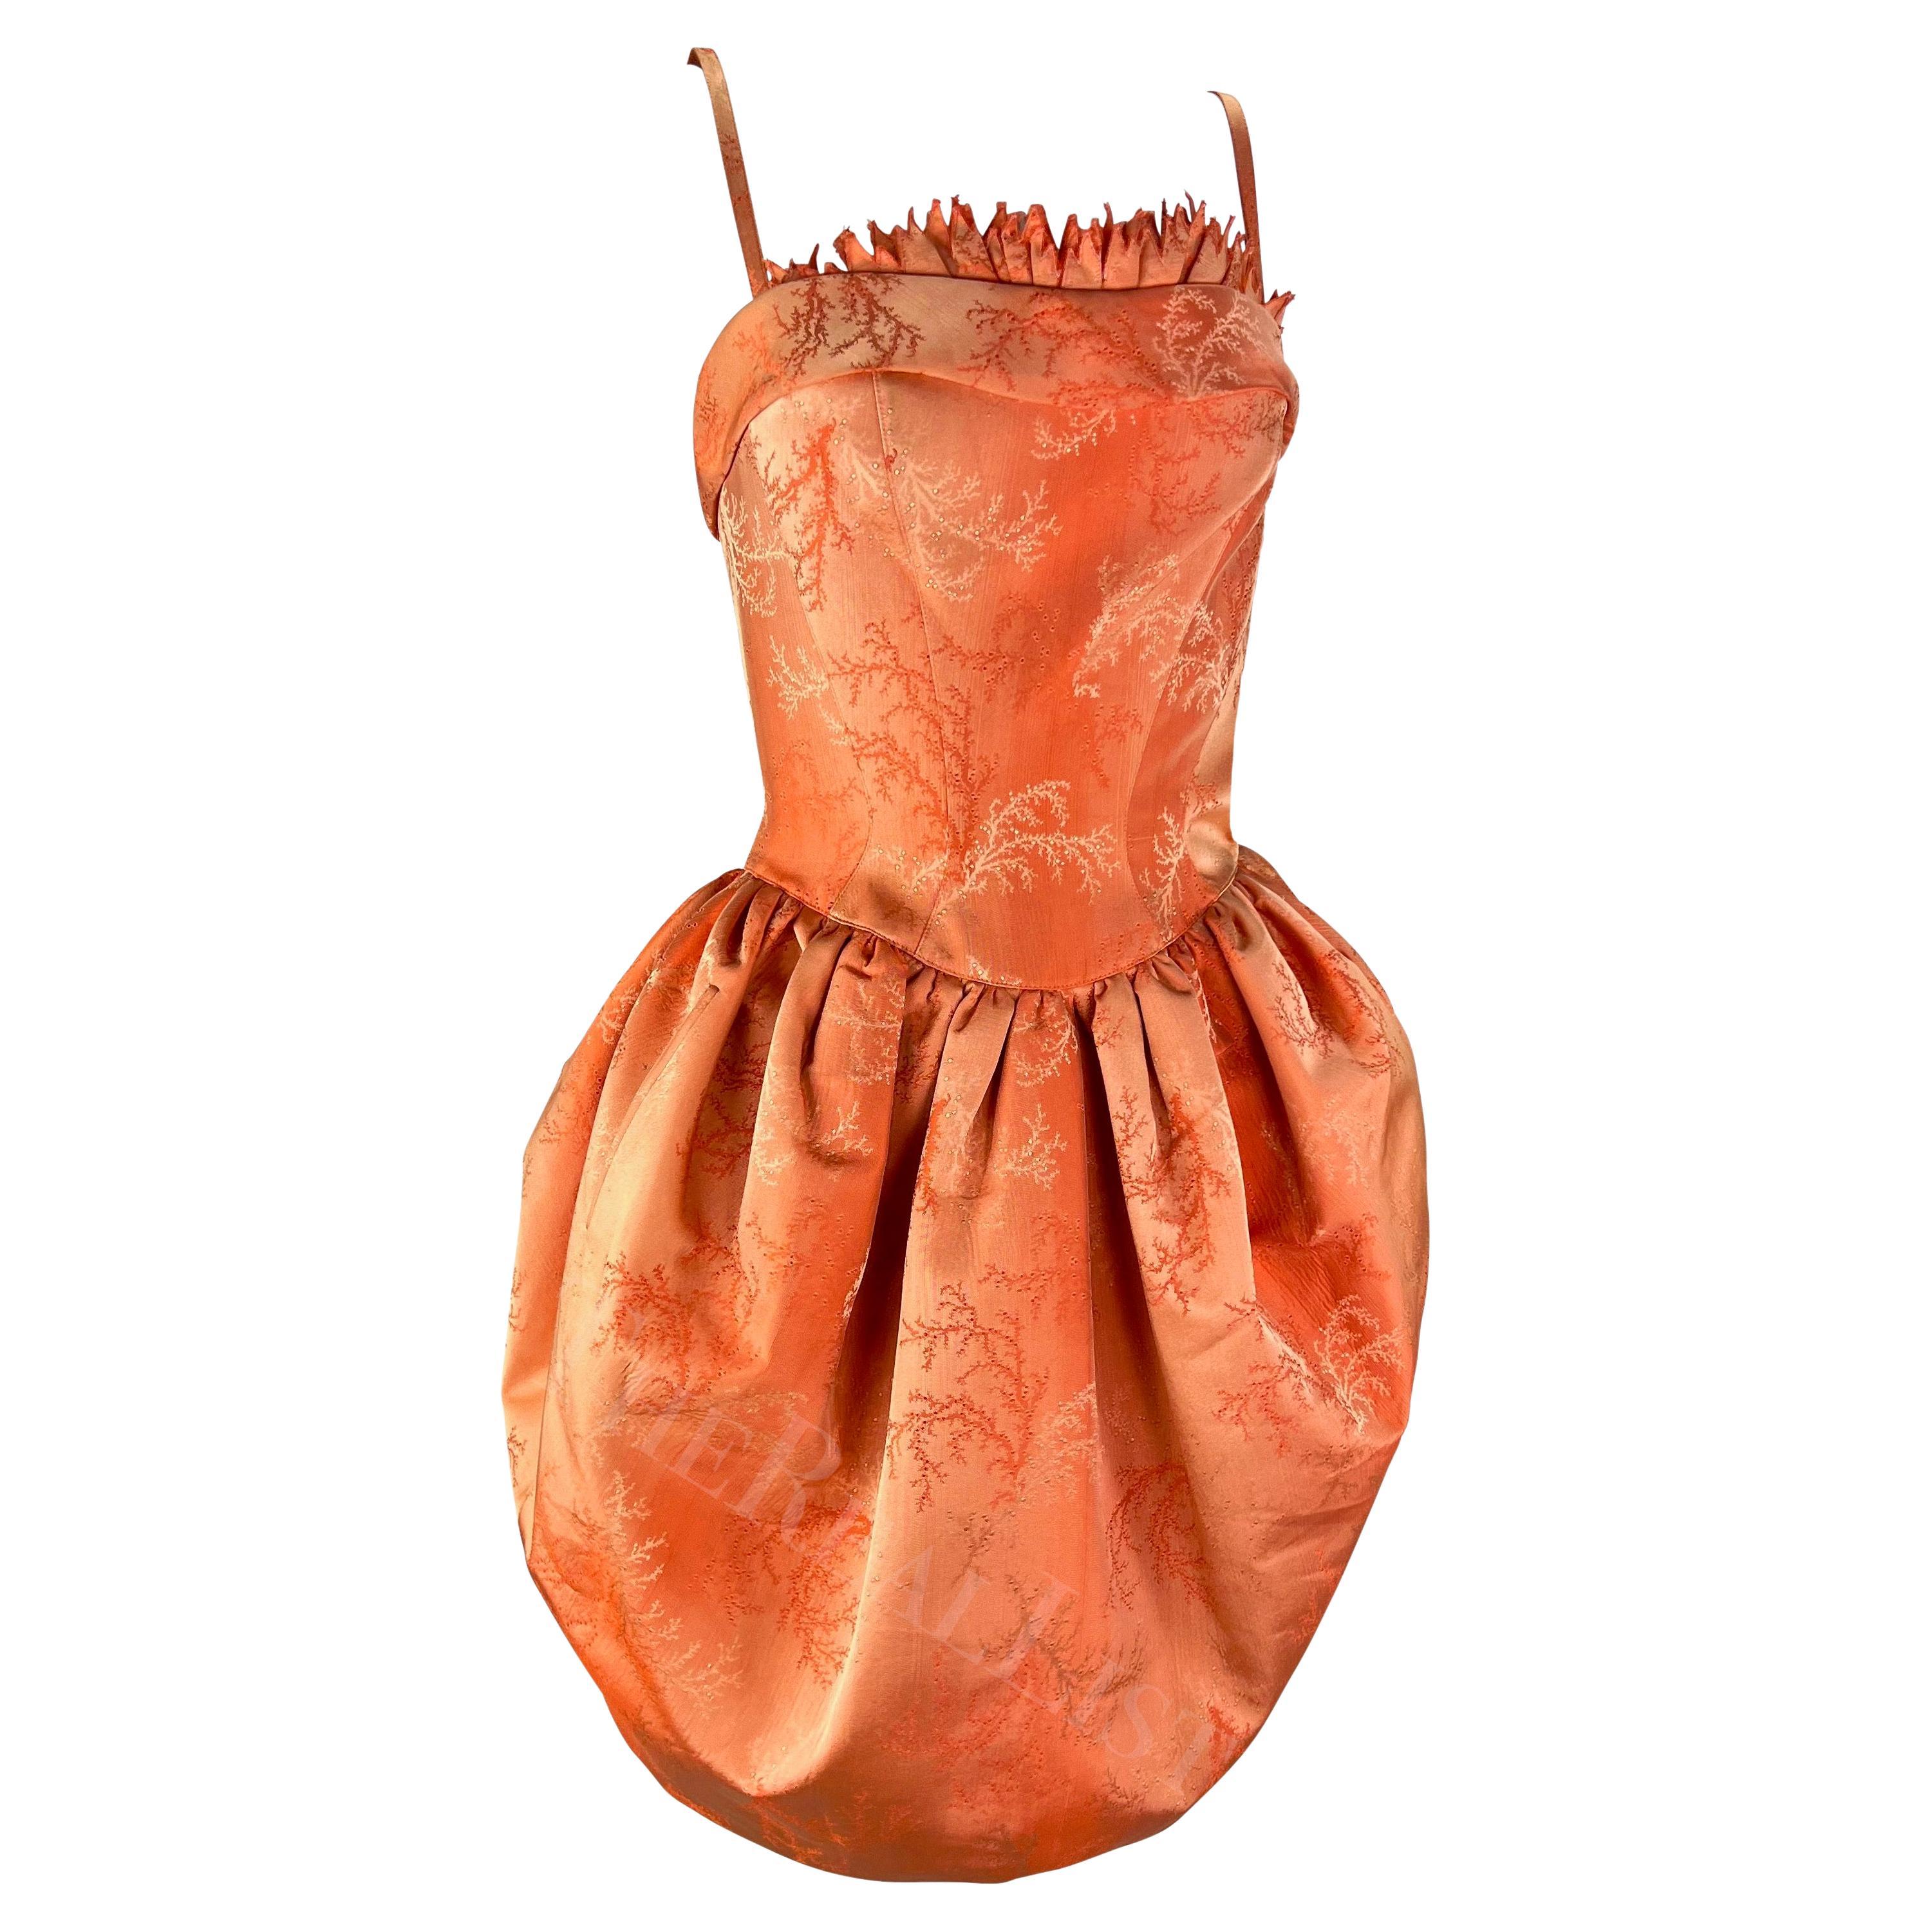 Échantillon rare de la Collectional S 1999 de Thierry Mugler, cette mini robe orange corail est caractérisée par une jupe volumineuse, un haut ajusté et des bretelles spaghetti. Recouverte d'un jacquard floral monochrome orange, cette mini robe